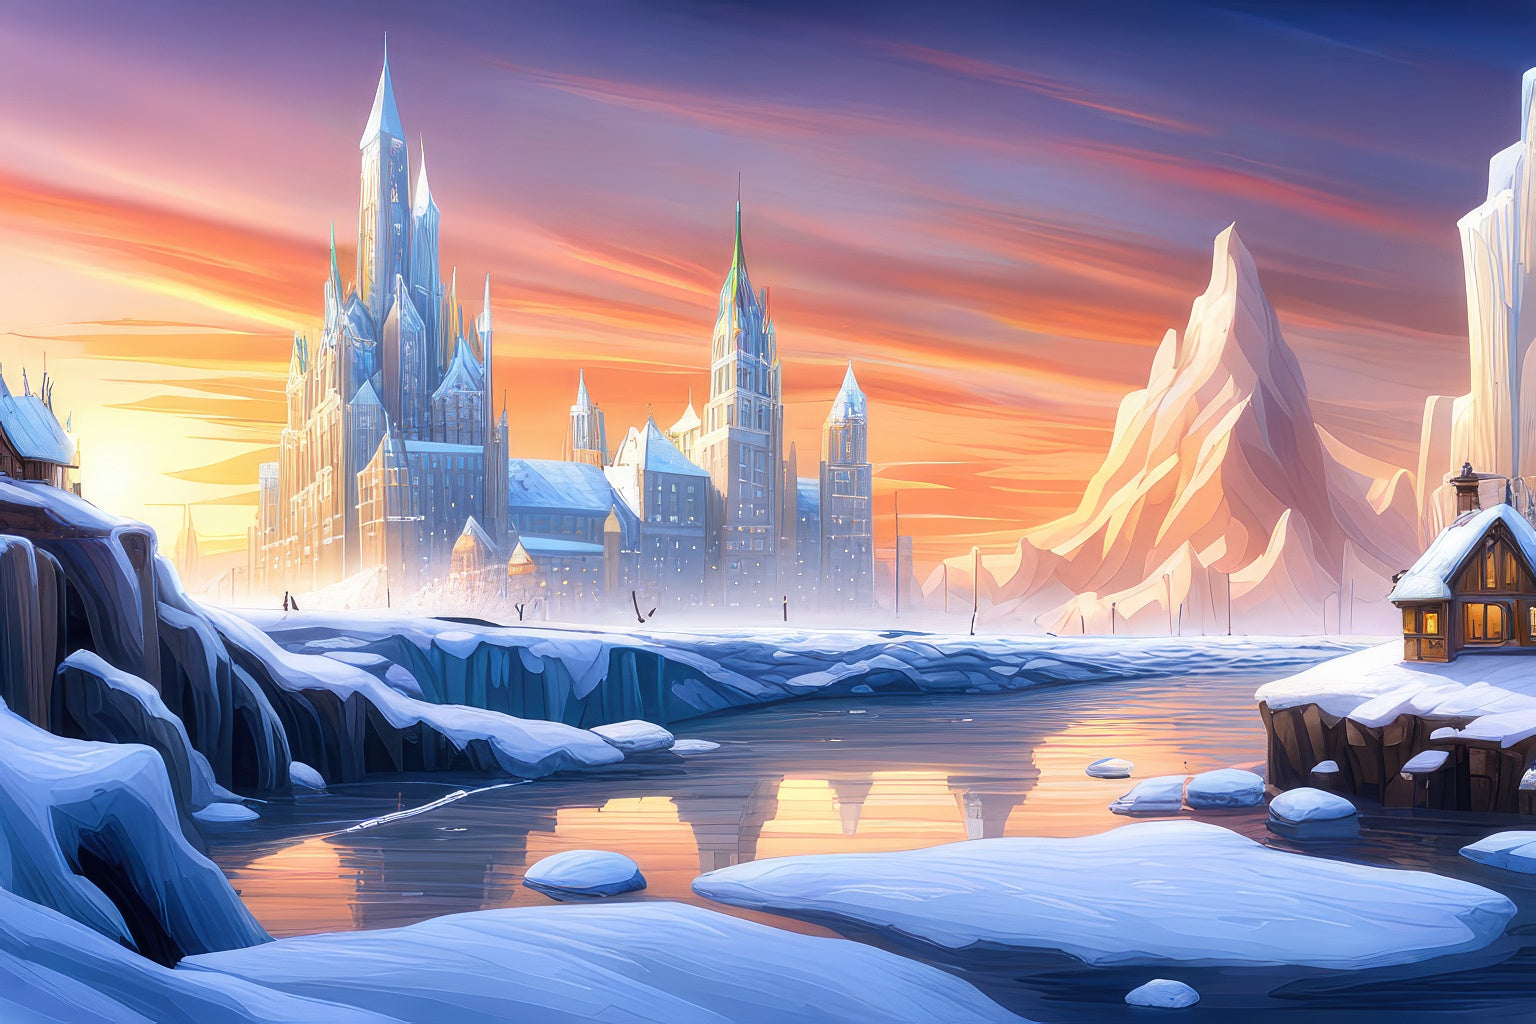 Snow Castle Digital Fantasy Illustration Art Print